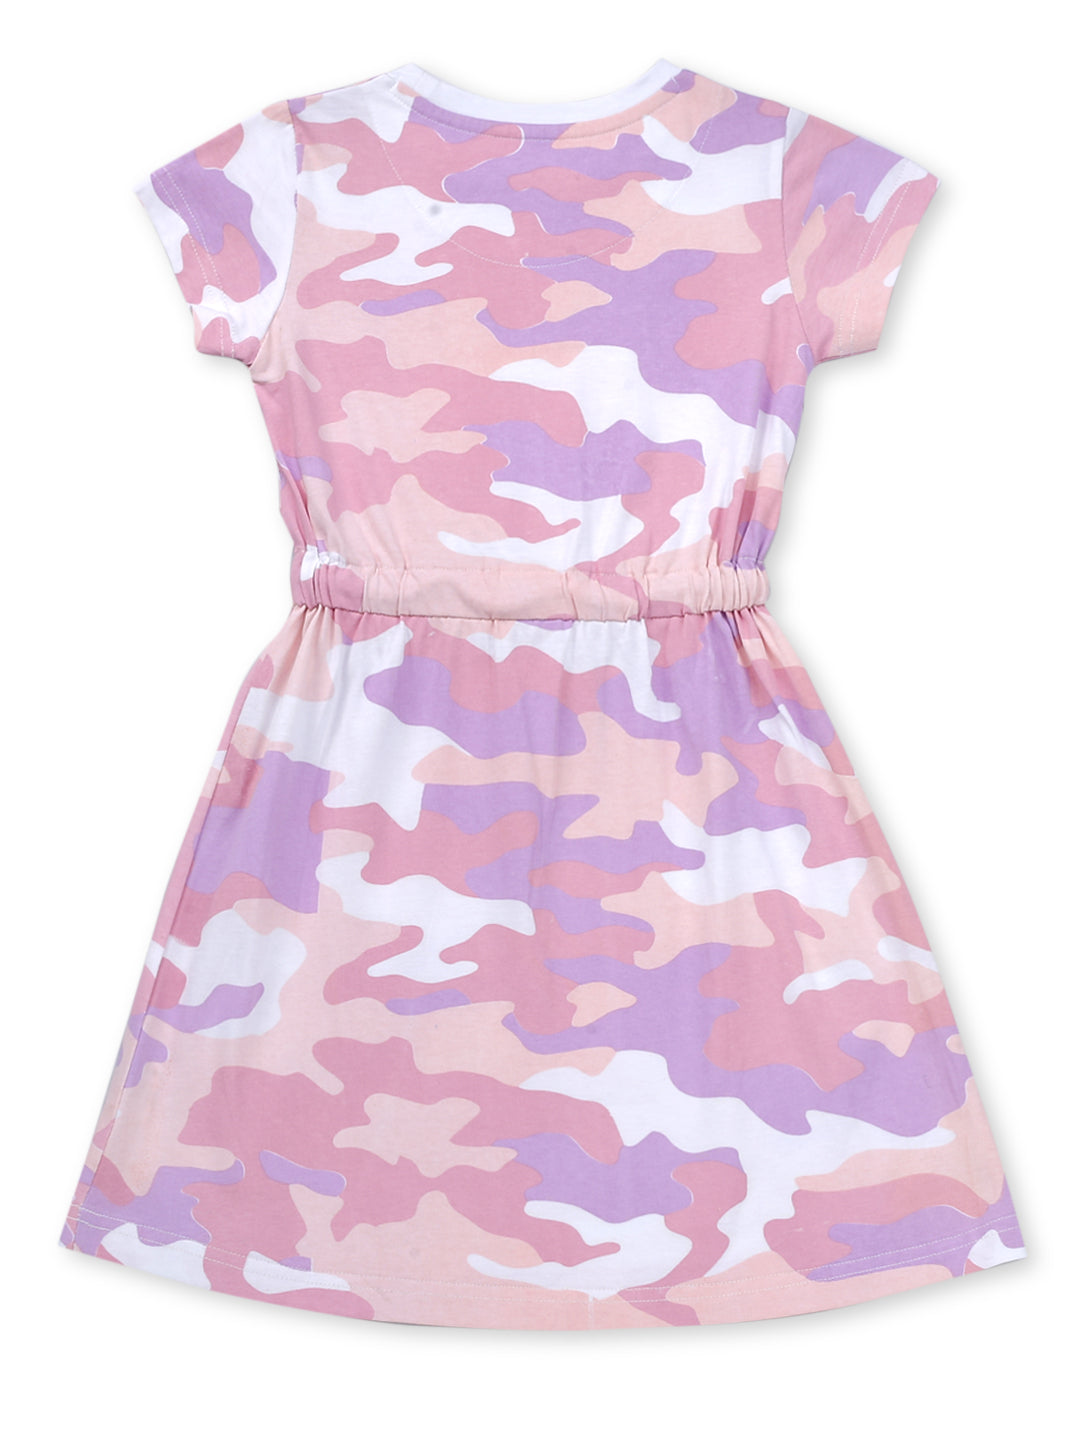 Girls Pink Cotton Printed Dress